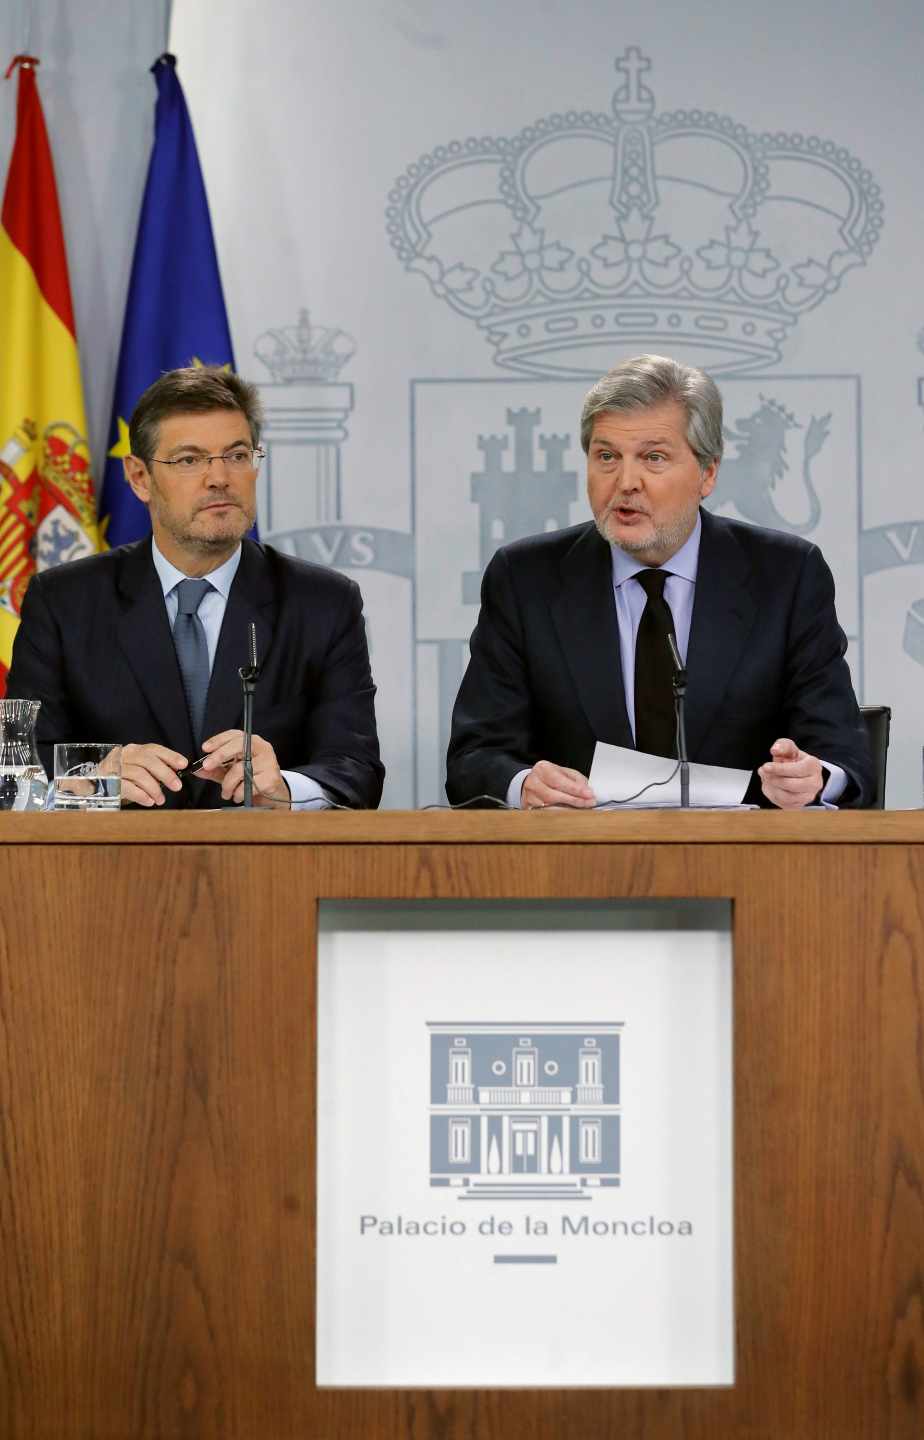 El ministro de Justicia Rafael Catalá y el ministro portavoz Iñigo Méndez de Vigo, tras la reunión del consejo de ministros.